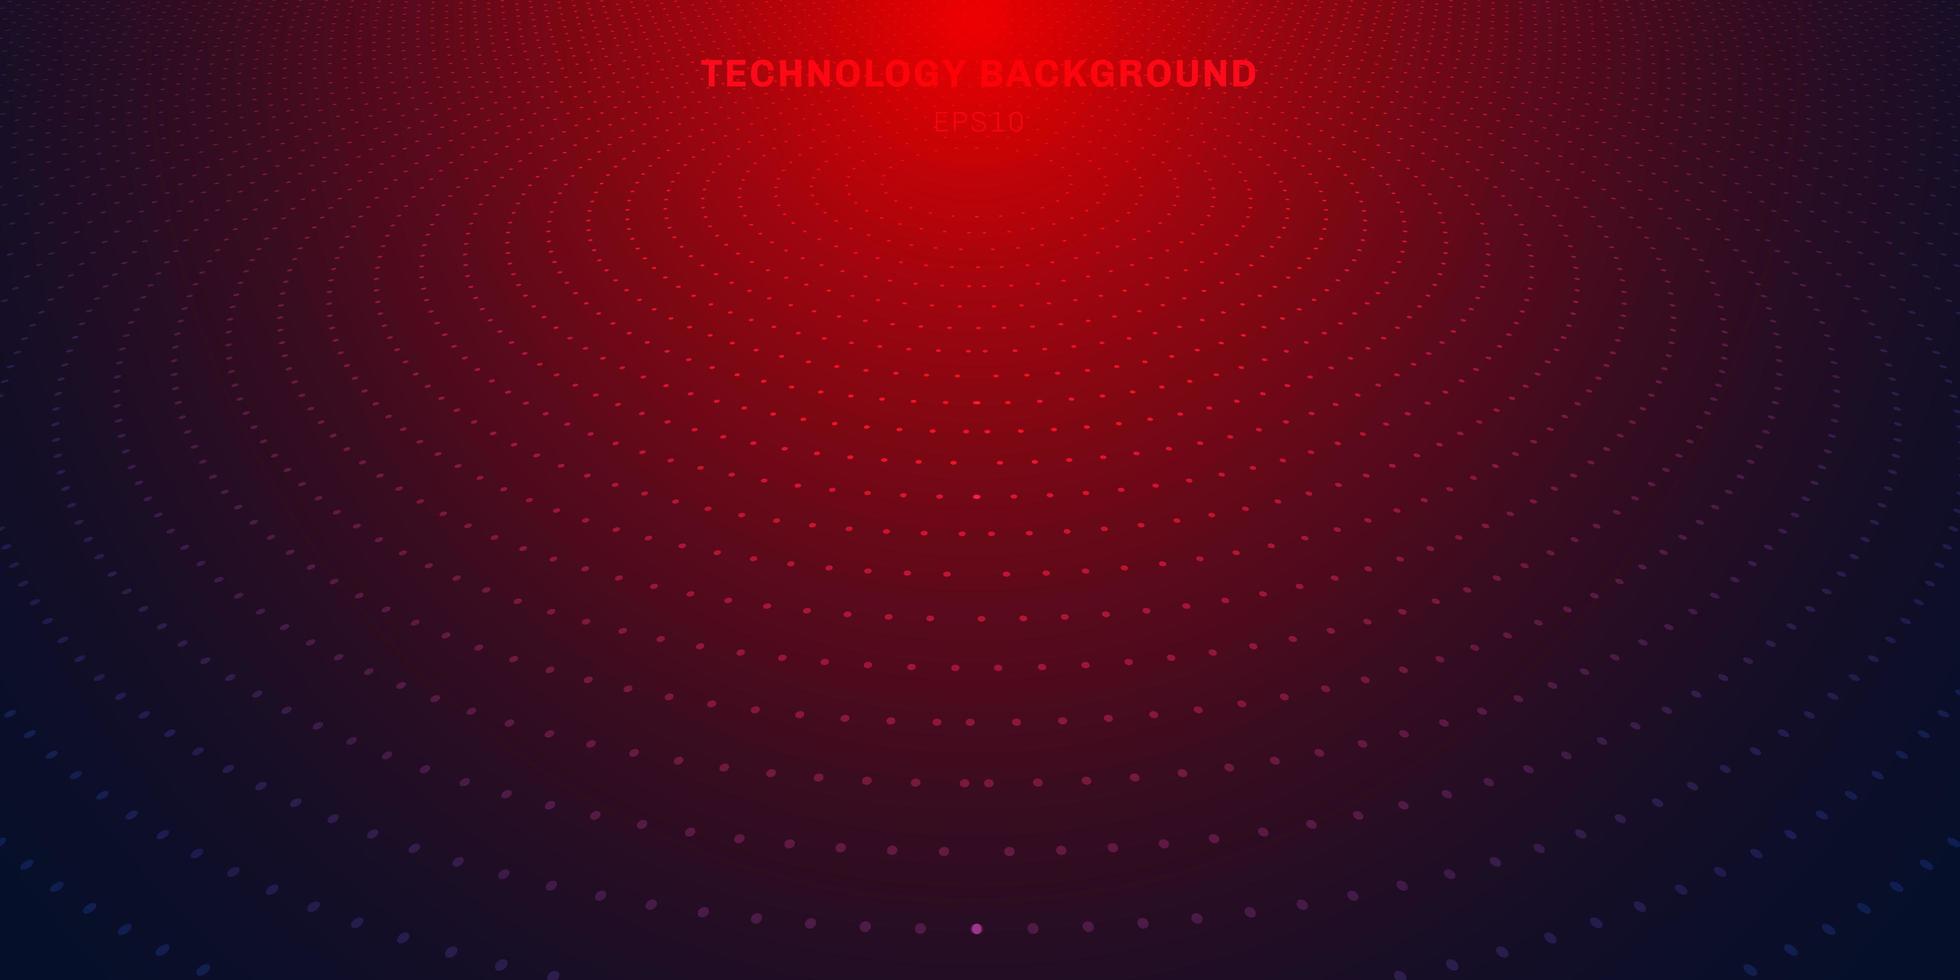 semitono astratto del modello di punti radiali rossi su sfondo sfumato blu scuro. tecnologia digitale concetto futuristico illuminazione al neon. vettore